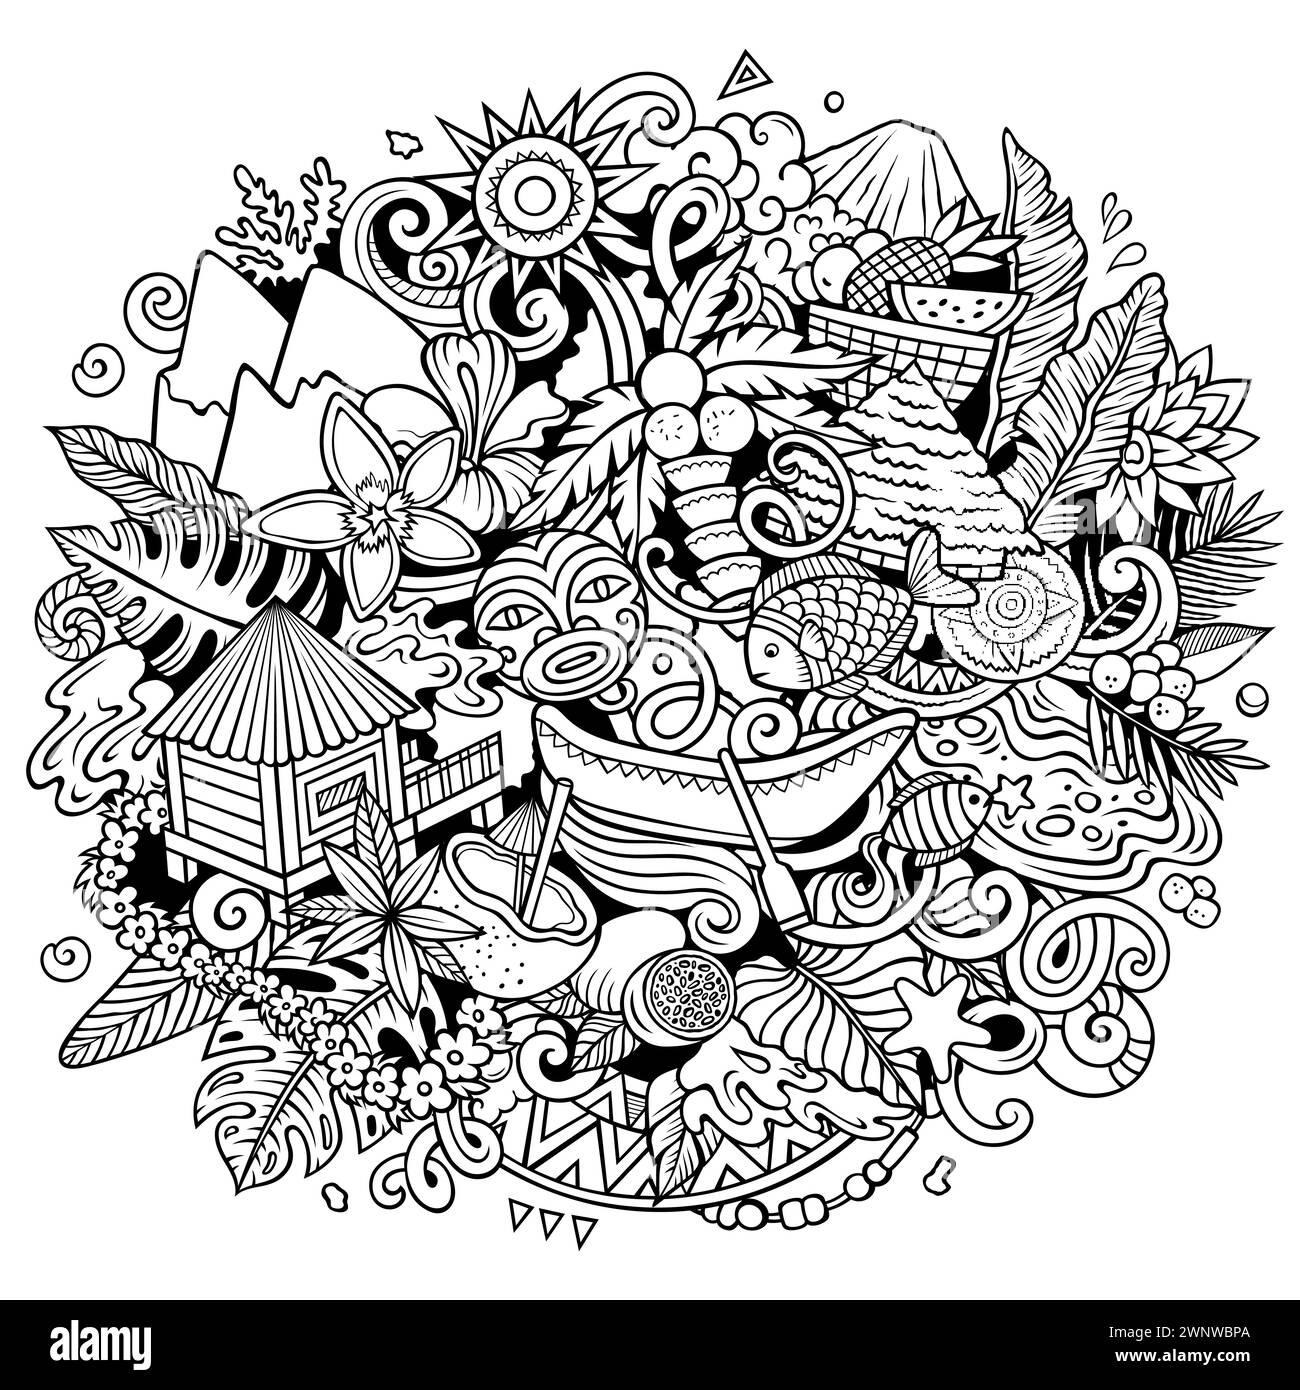 Tahiti handgezeichnete Zeichentrickgrafik-Kritzelillustration. Kreativer lustiger Vektor-Hintergrund mit Französisch-Polynesien-Elementen und -Objekten. Line Art Komposition Stock Vektor